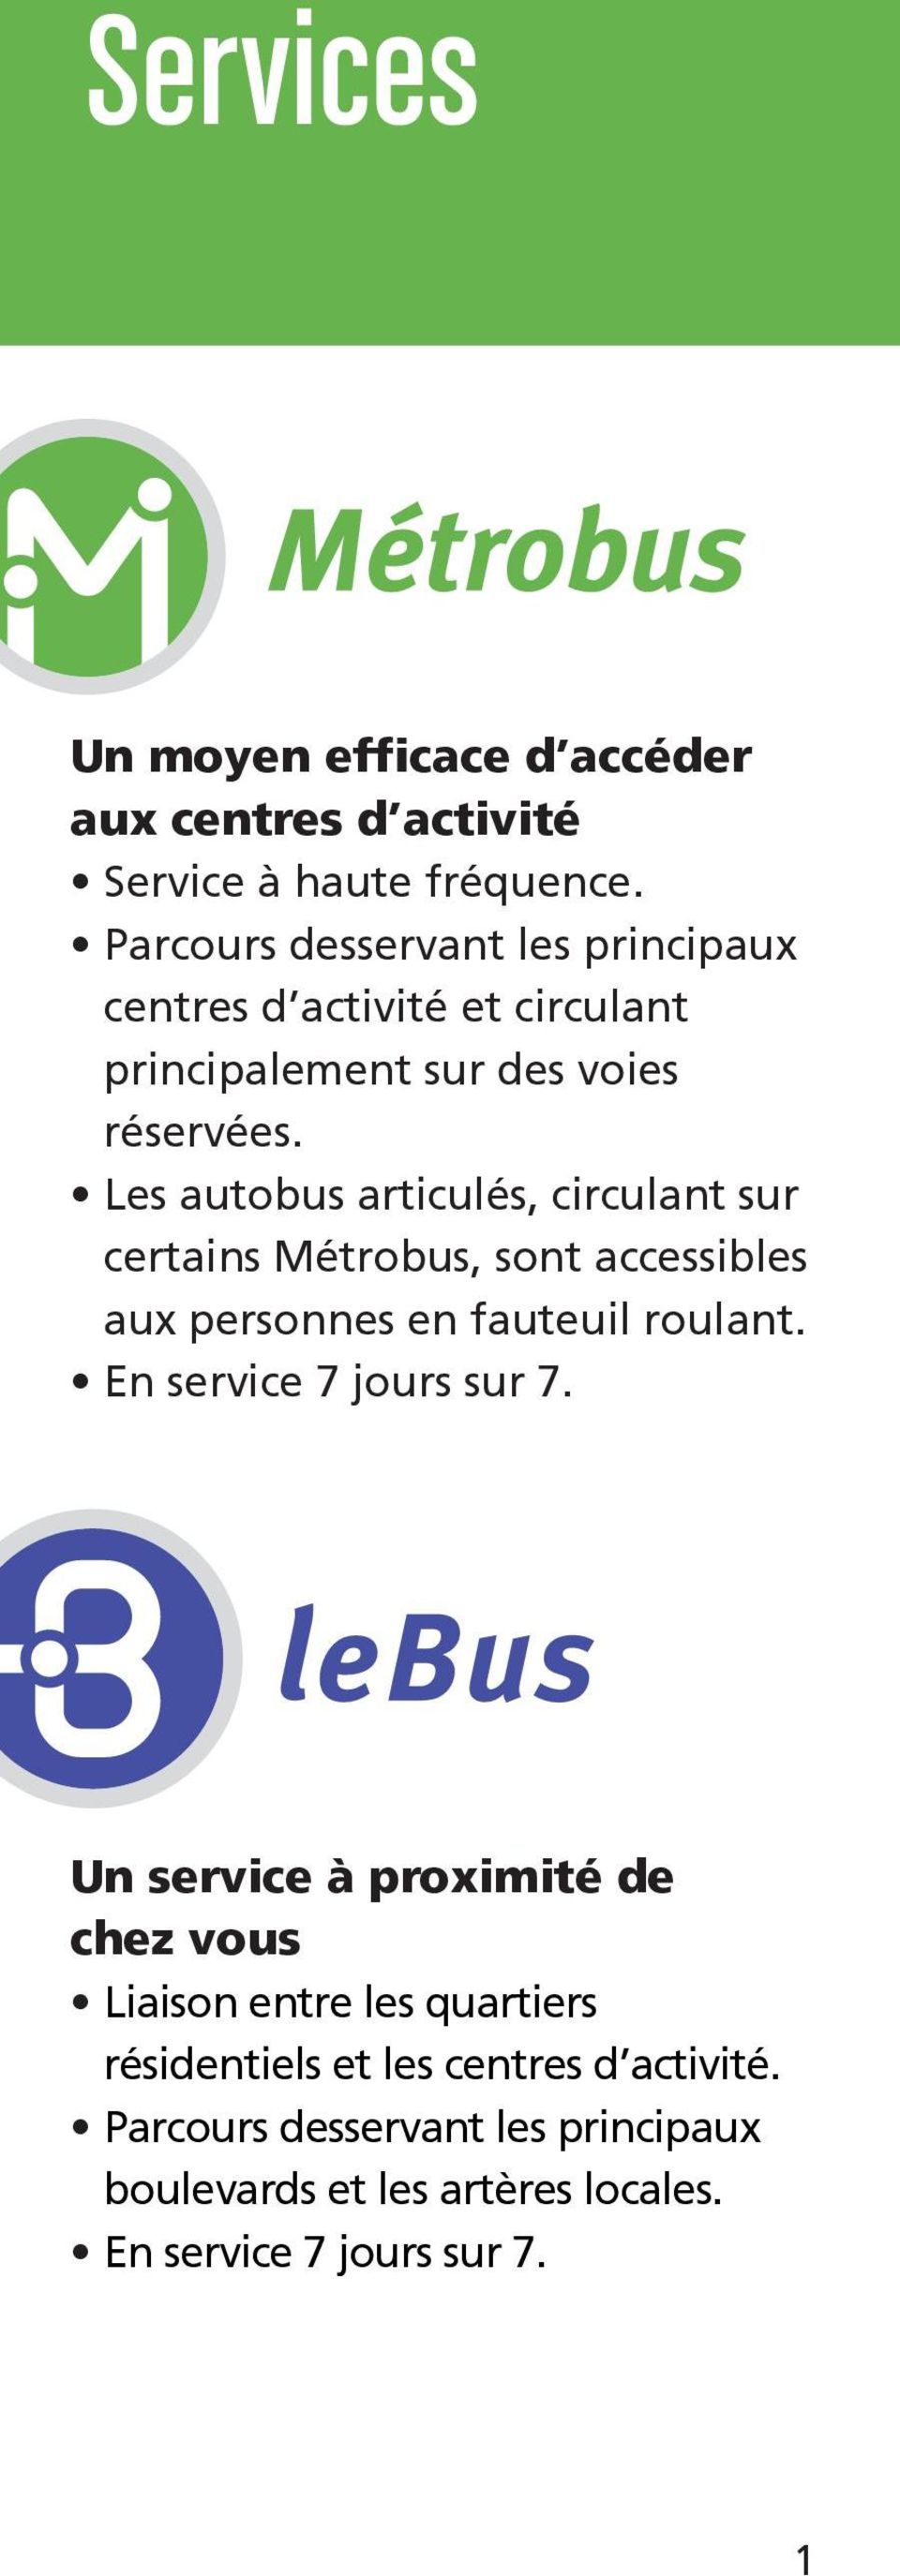 Les autobus articulés, circulant sur certains Métrobus, sont accessibles aux personnes en fauteuil roulant. En service 7 jours sur 7.